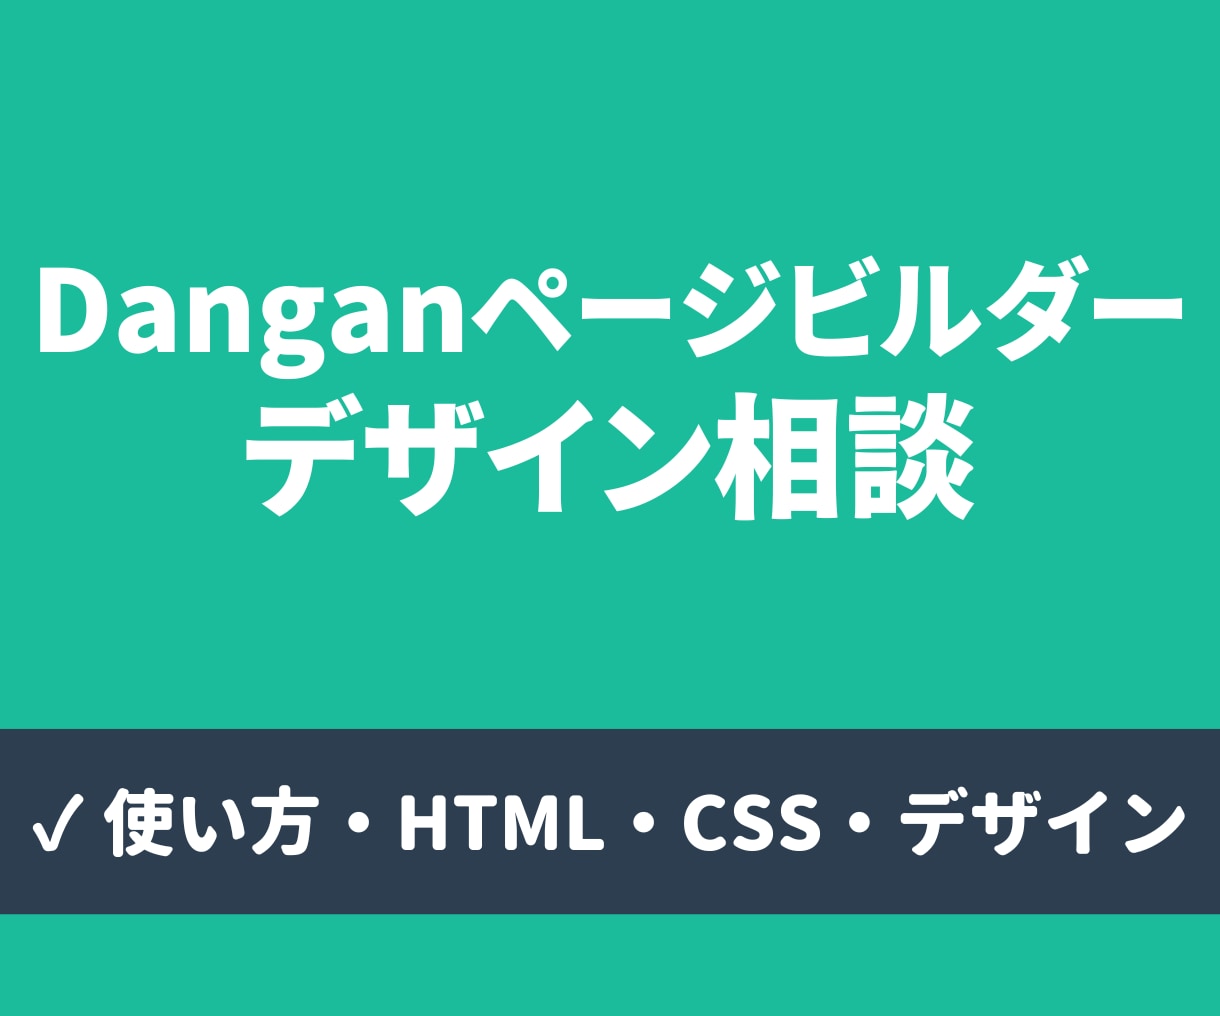 Danganページビルダーの相談乗ります 使い方、HTML・CSS、デザインなど対応 イメージ1